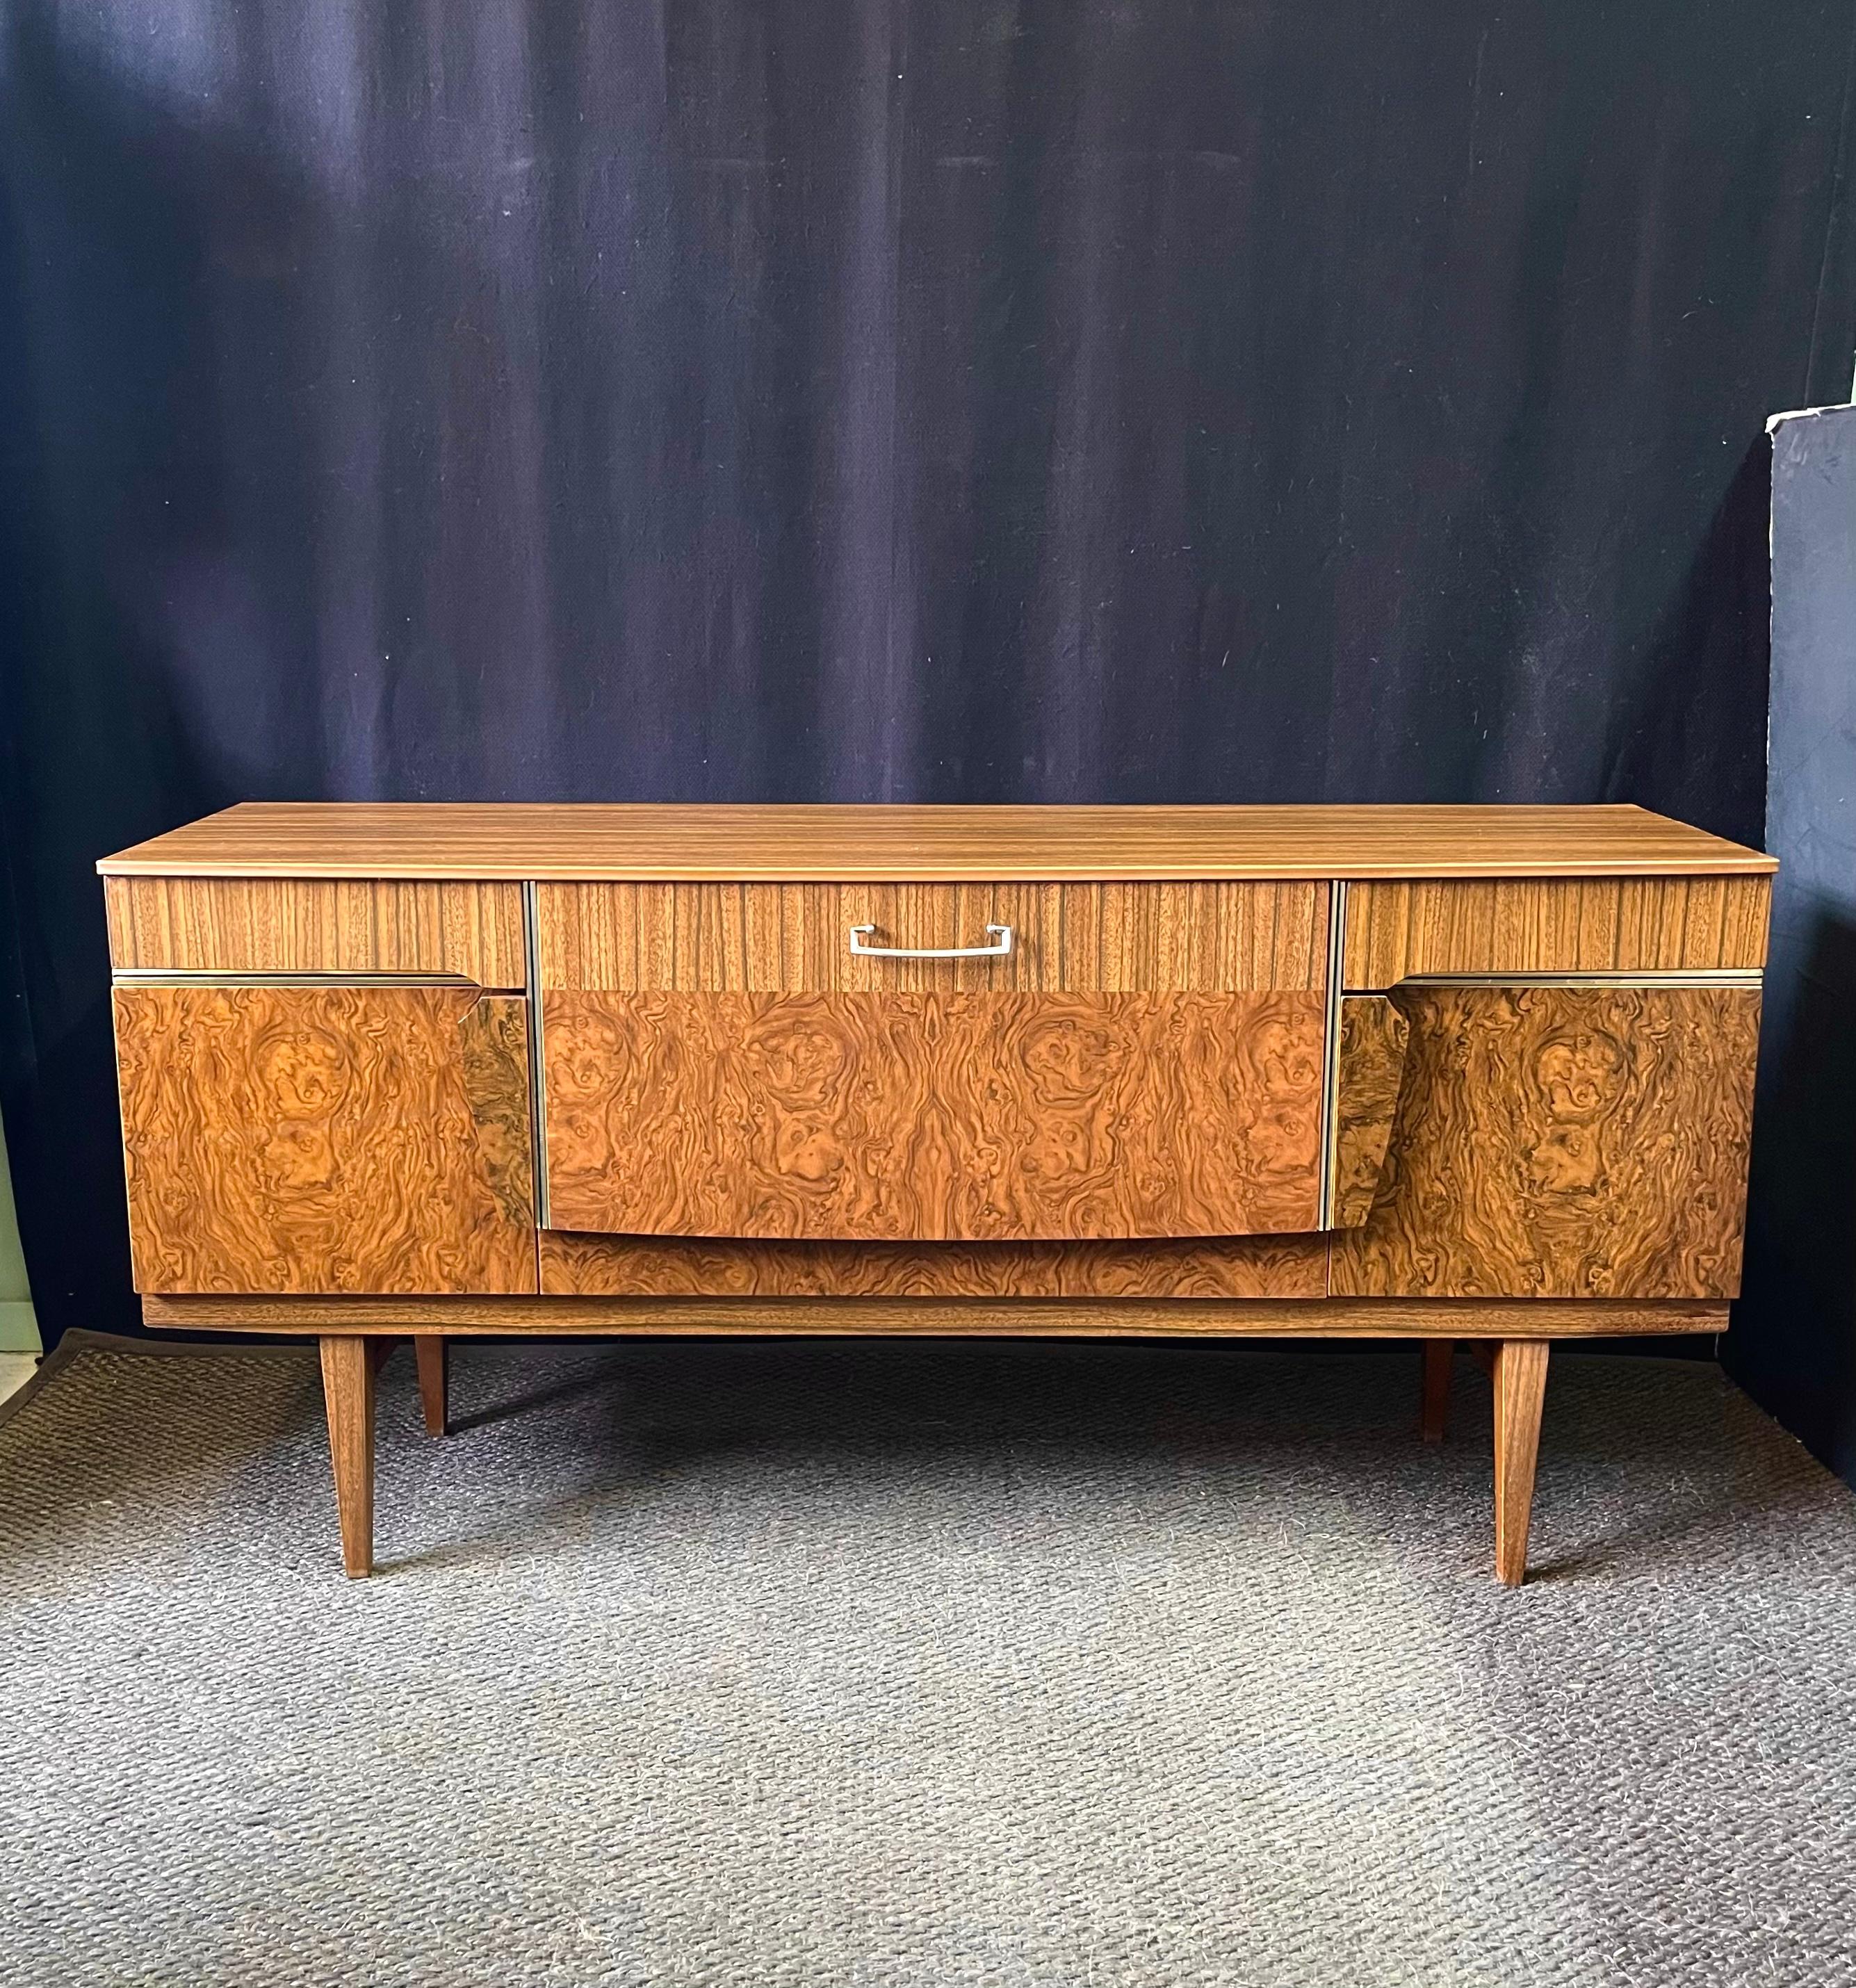 Diese Vintage-Credenza aus der Mitte des Jahrhunderts wurde in den 1950er Jahren in England von Beautility Furniture entworfen und hergestellt. Die schicke, stilvoll gestaltete Kredenz ruht auf konisch zulaufenden Beinen und ist mit Wurzelholz und